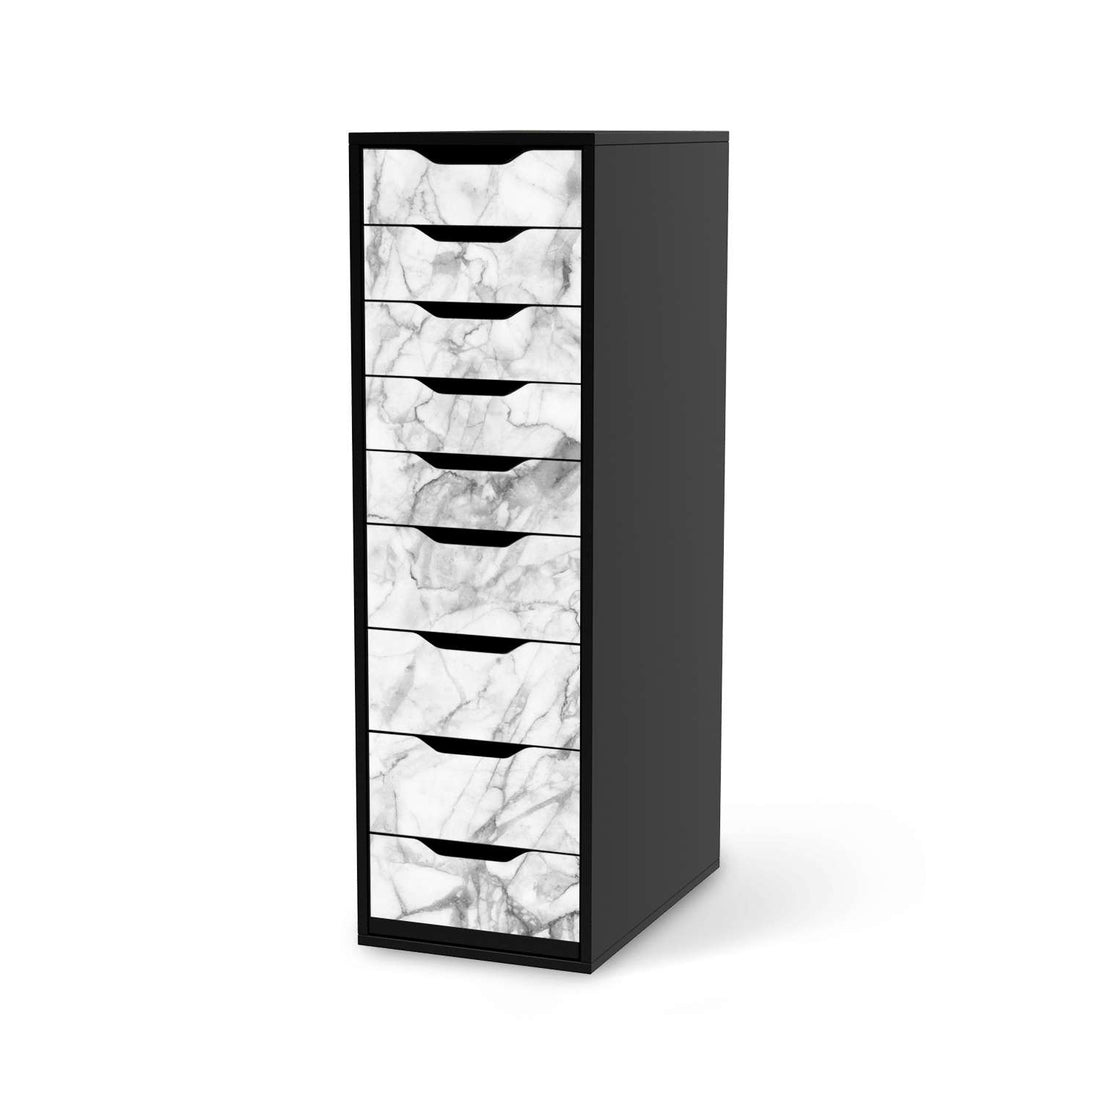 Folie für Möbel Marmor weiß - IKEA Alex 9 Schubladen - schwarz